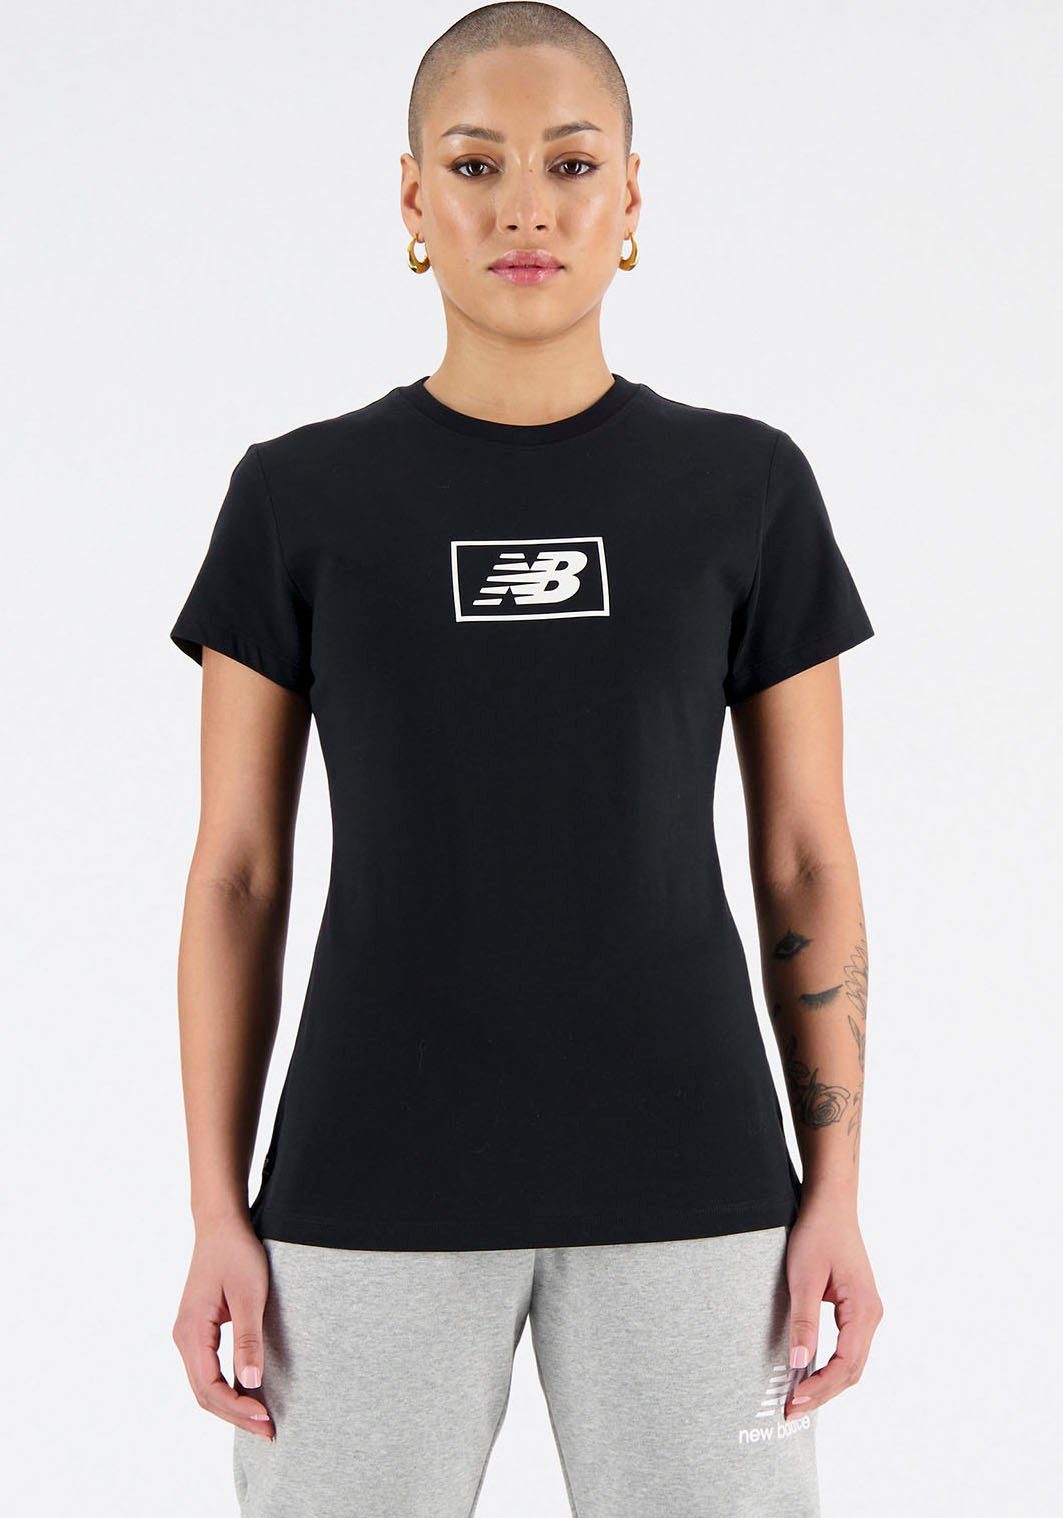 New Balance T-Shirt, New Balance-Grafik Logo in der vorderen Mitte